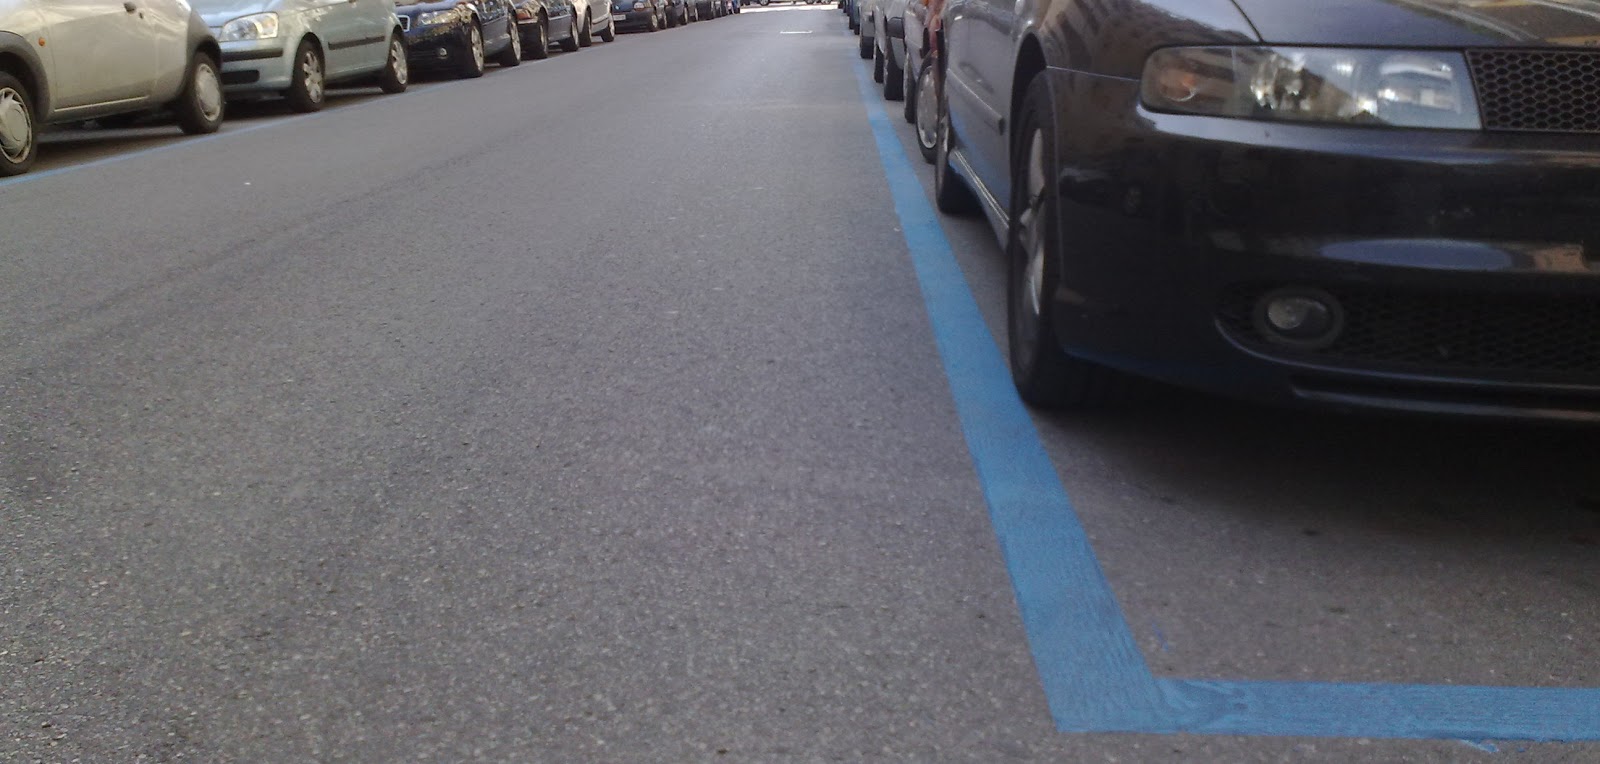 Parcheggi a strisce blu a Bracciano: Tondinelli replica al Pd - Terzo ... - TerzoBinario.it